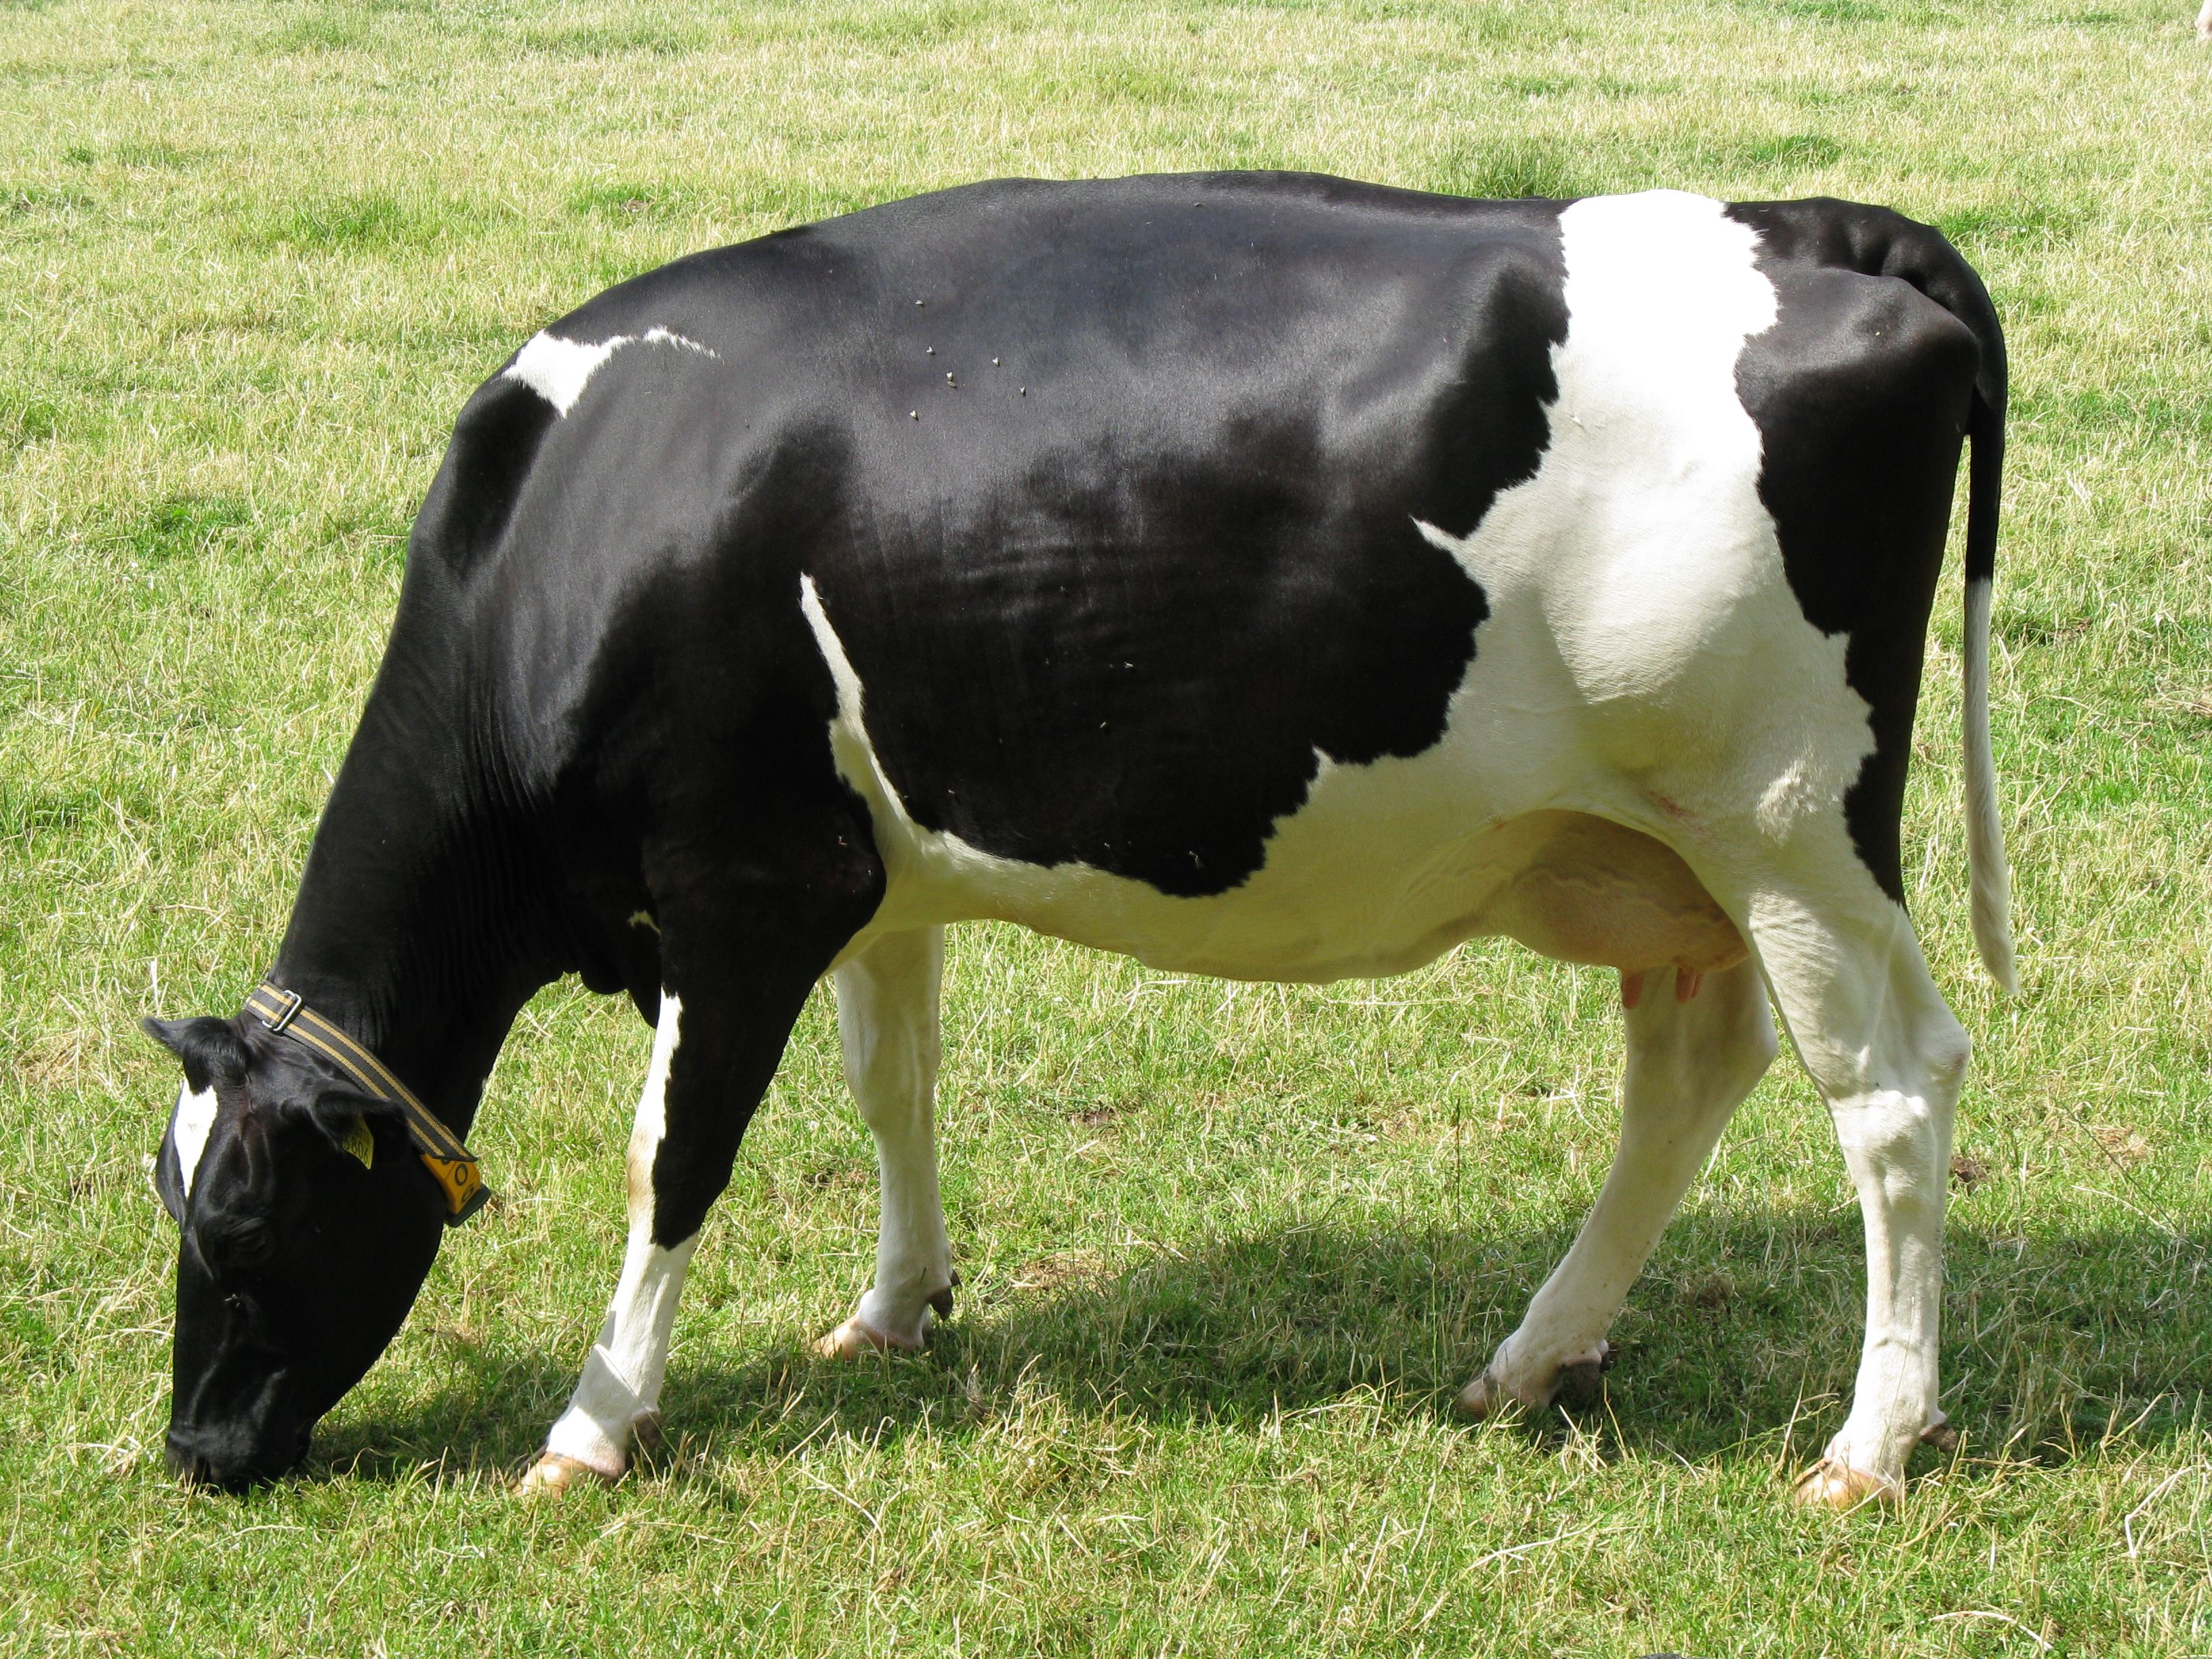 Free download Description Cow bwJPG [3264x2448] for your Desktop, Mobile & Tablet. Explore Cattle Wallpaper. Cow Wallpaper, Cow Wallpaper for Desktop, Cow Print Wallpaper